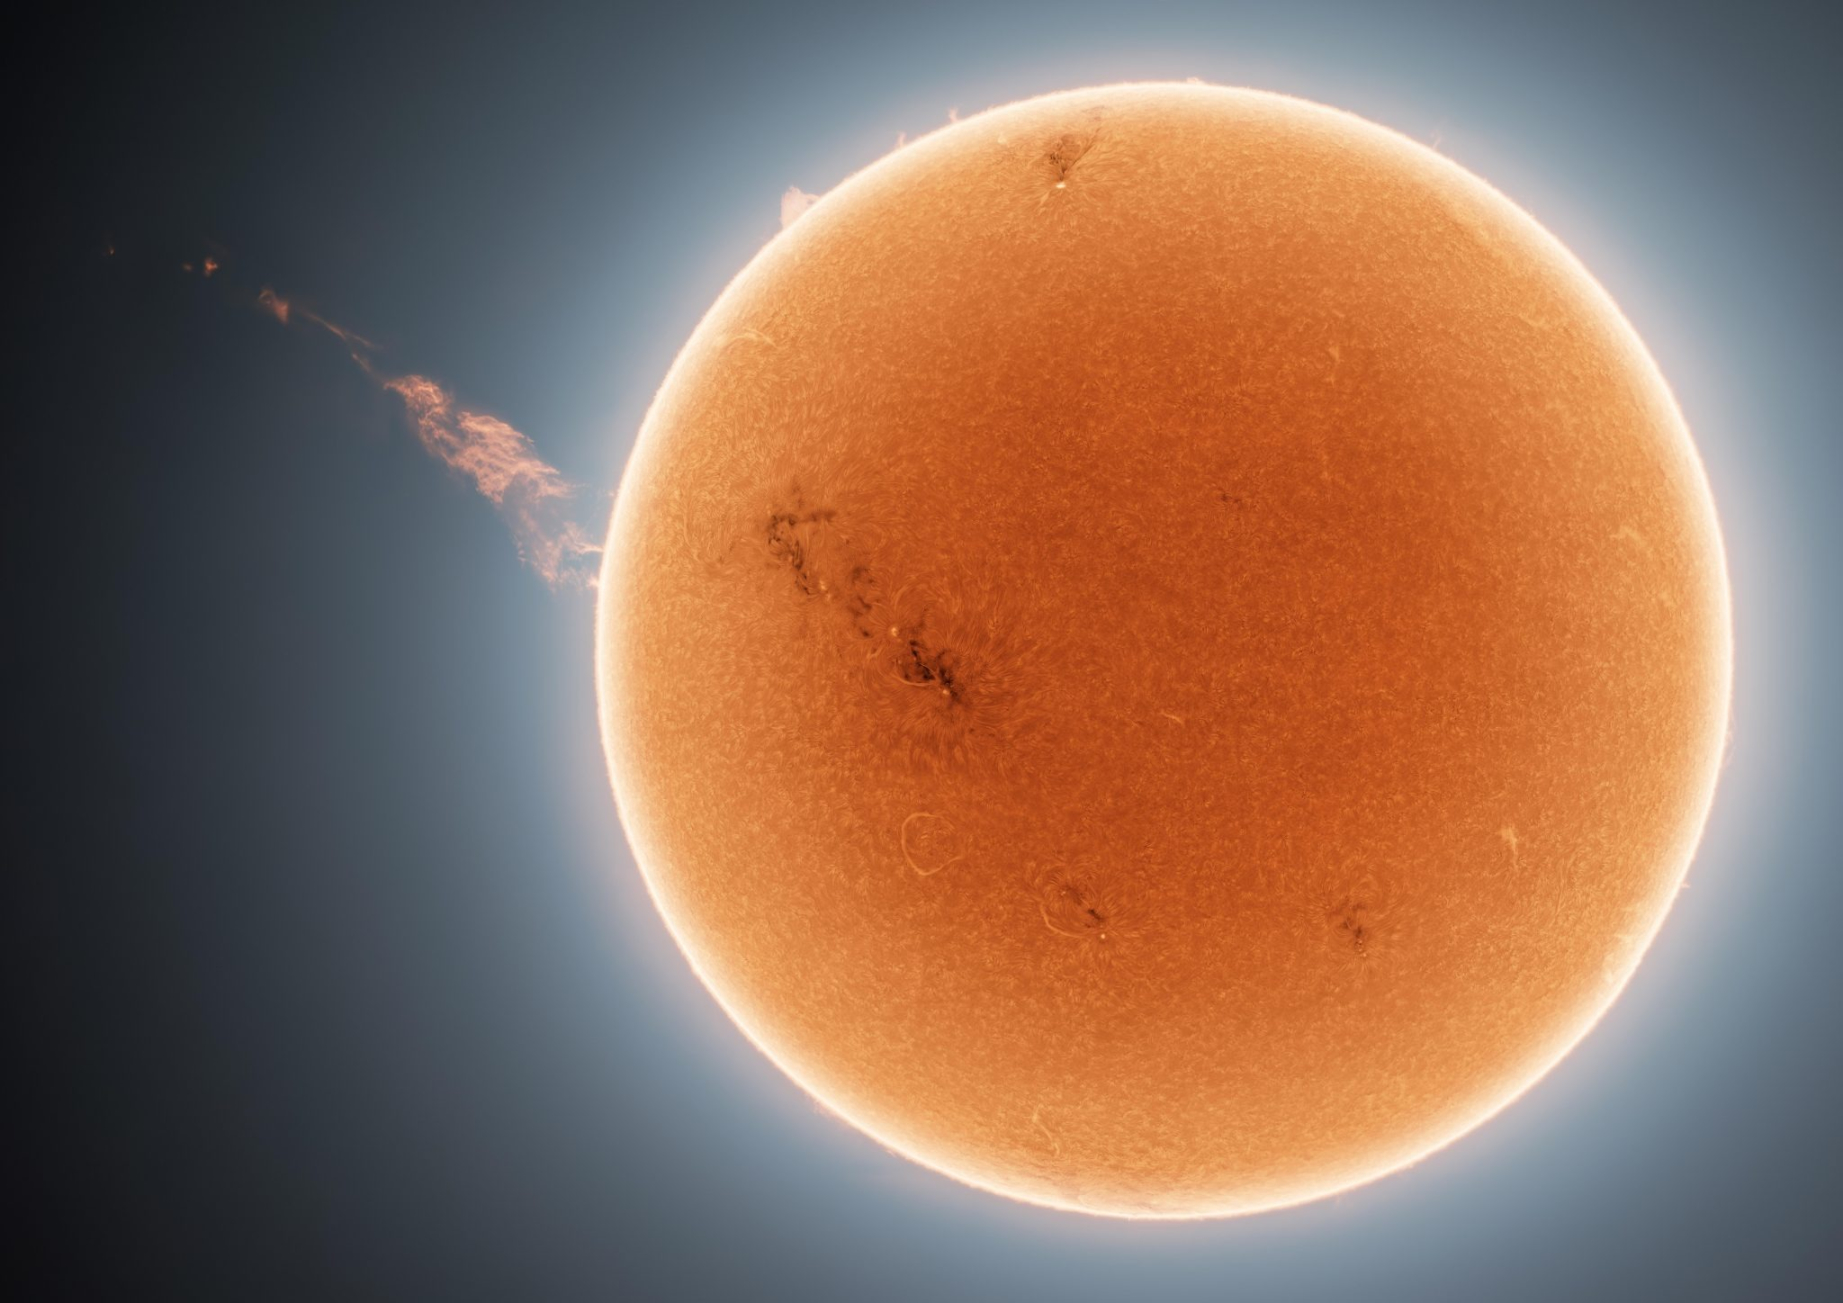 Fotografija koja prikazuje površinu Sunca i masivno koronalno izbacivanje mase koje se dogodilo 24. rujna 2022. godine (©Andrew McCarthy/cosmicbackground.io).